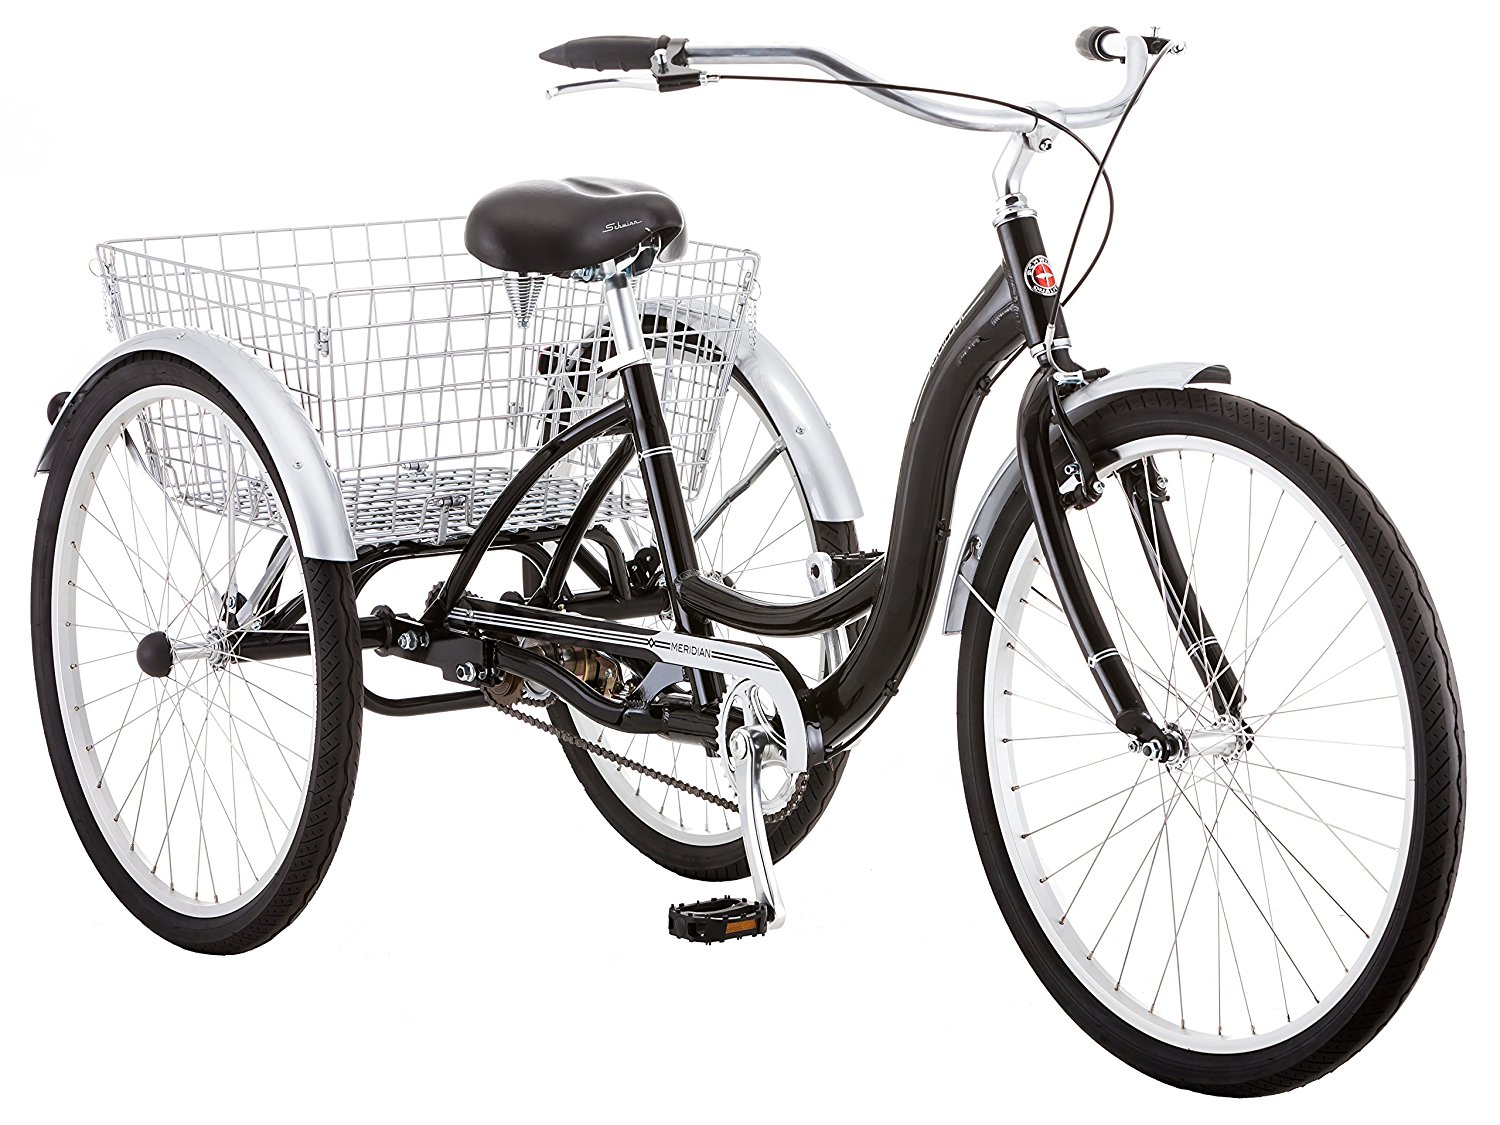  Schwinn Meridian Full-Size Adult Tricycle 26 wheel size Bike Trike